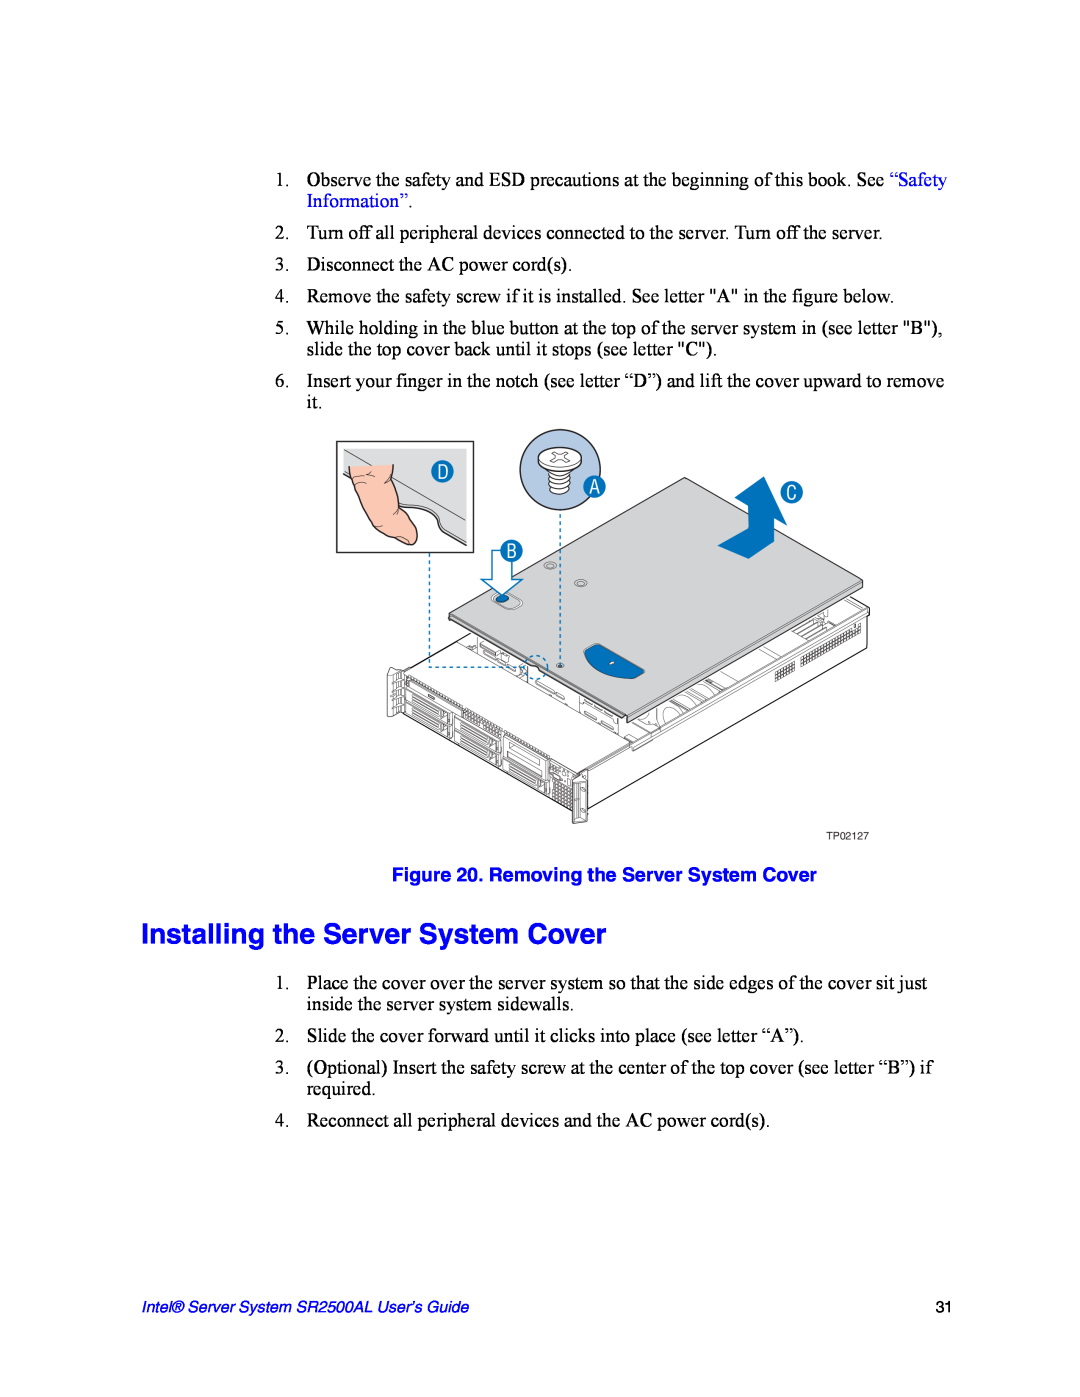 Intel SR2500AL manual Installing the Server System Cover, Removing the Server System Cover 